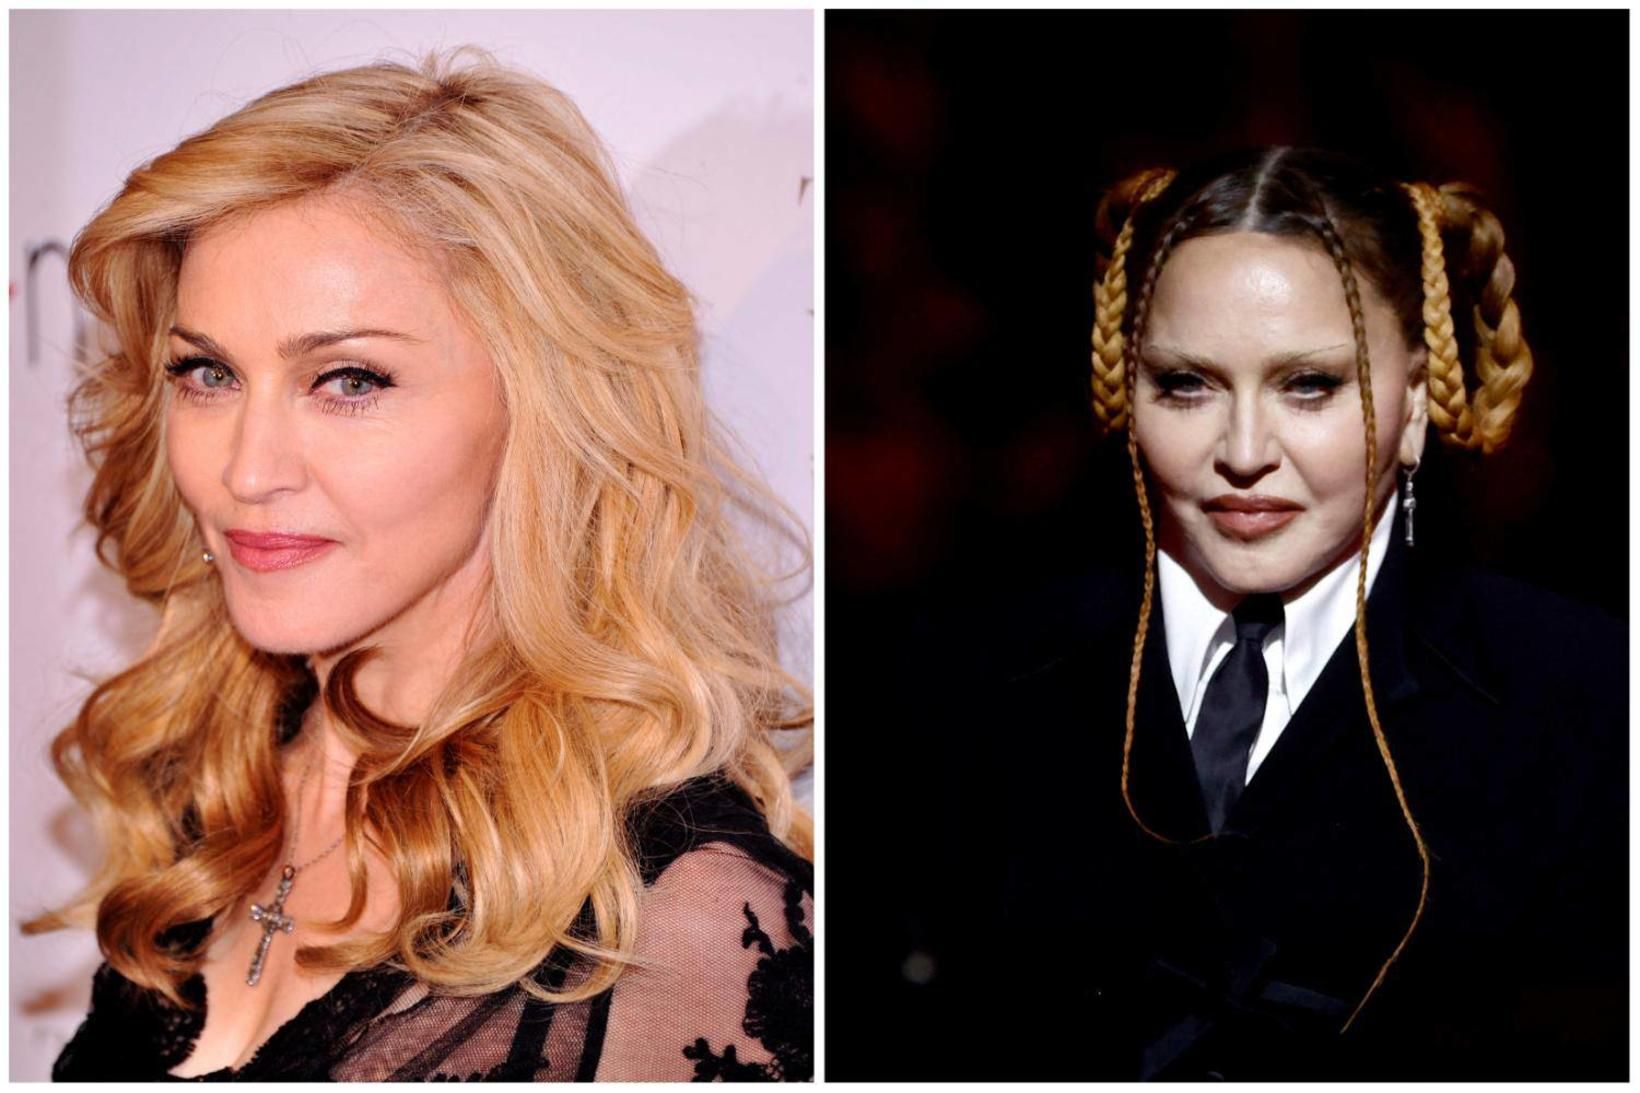 Útlit Madonnu vakti athygli á Grammy-verðlaunahátíðinni á sunnudagskvöld.